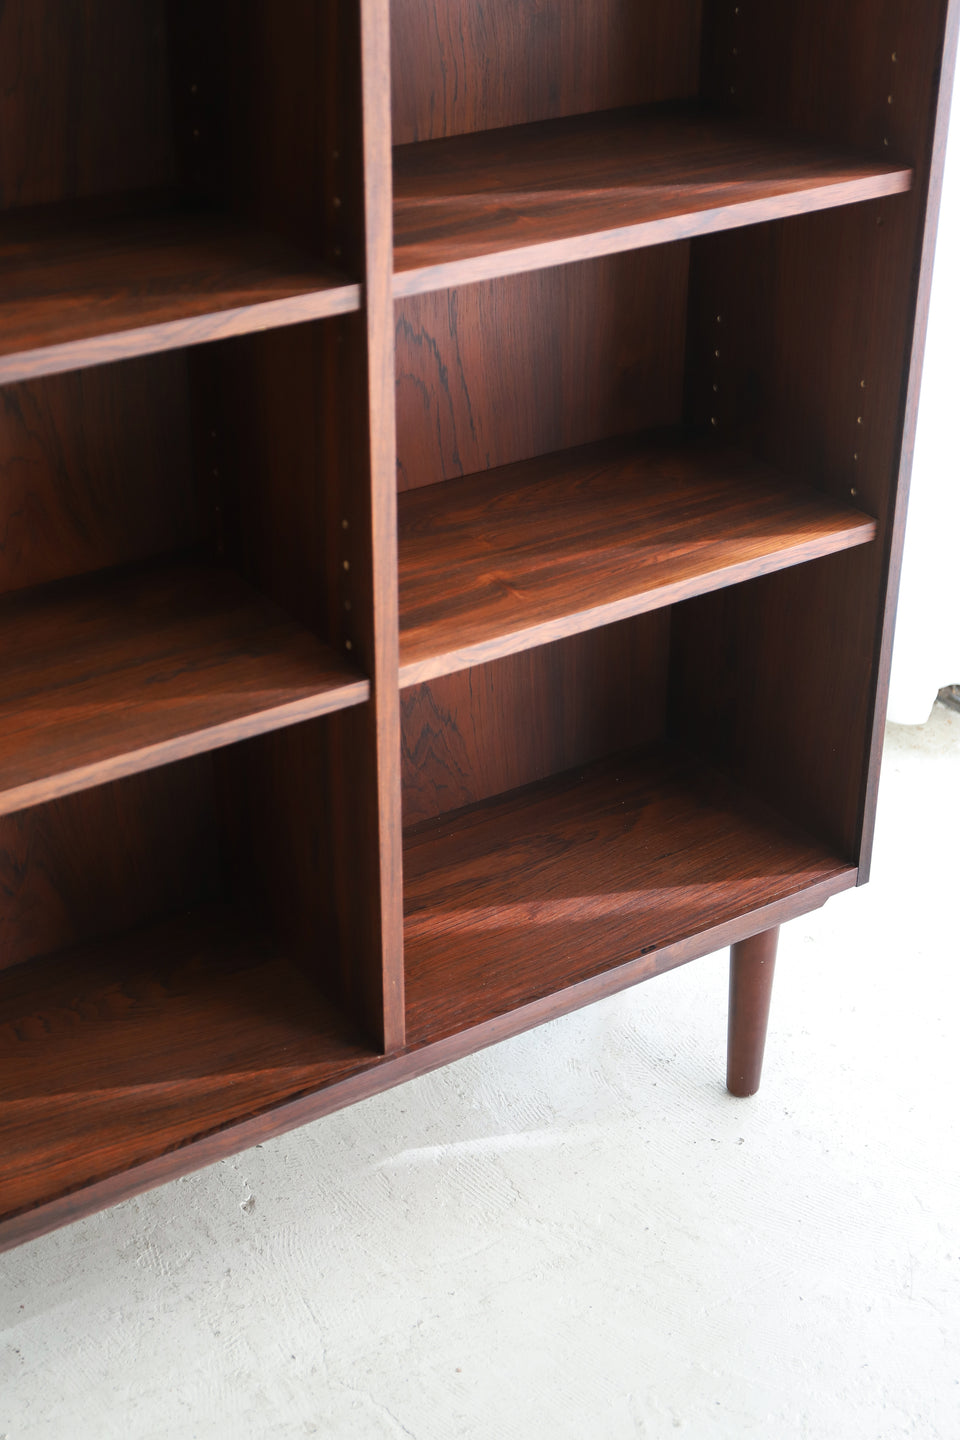 Rosewood Bookcase Shelf Danish Vintage/デンマークヴィンテージ ブックケース ローズウッド 本棚 北欧家具